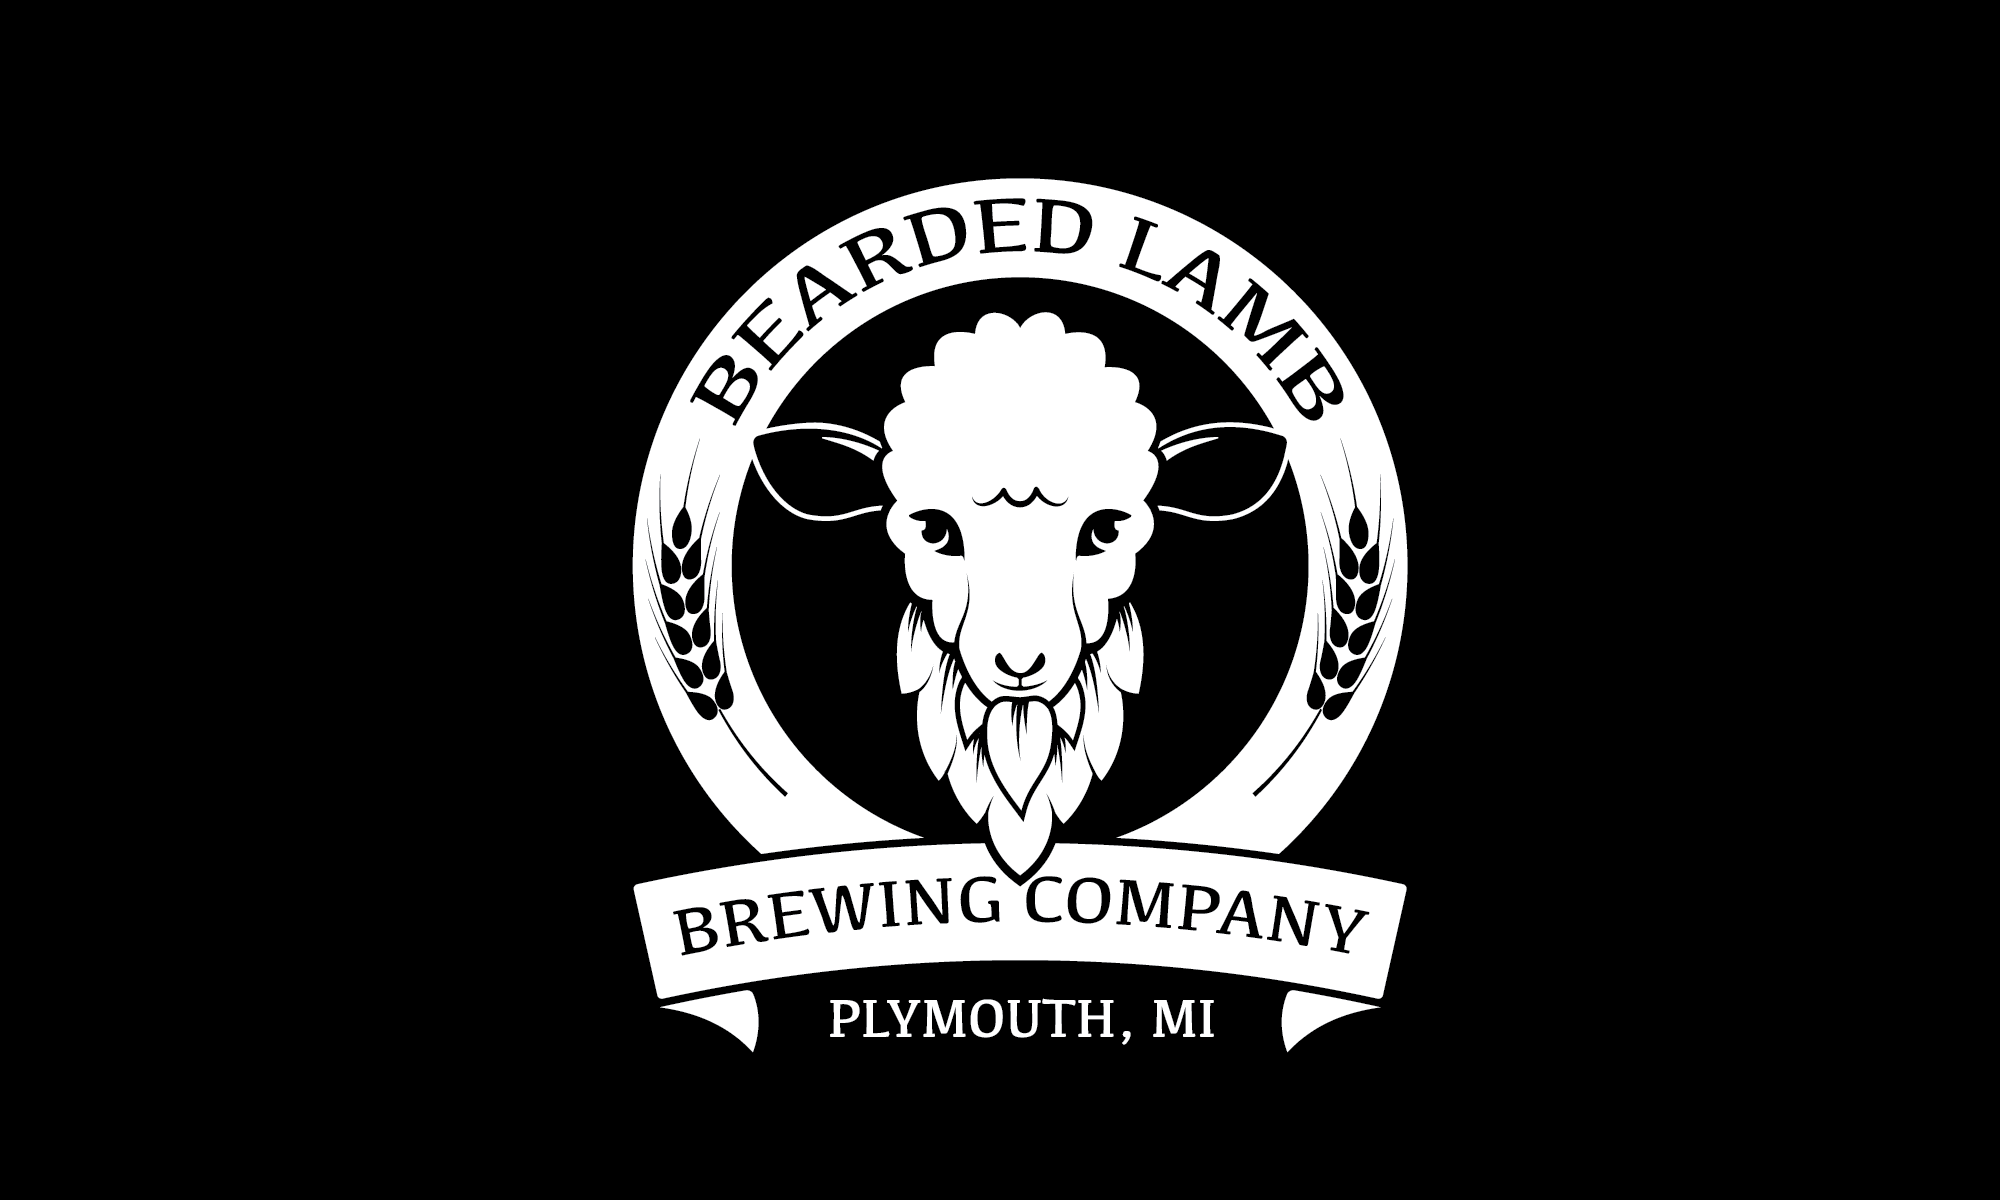 Bearded Lamb Brewing Company